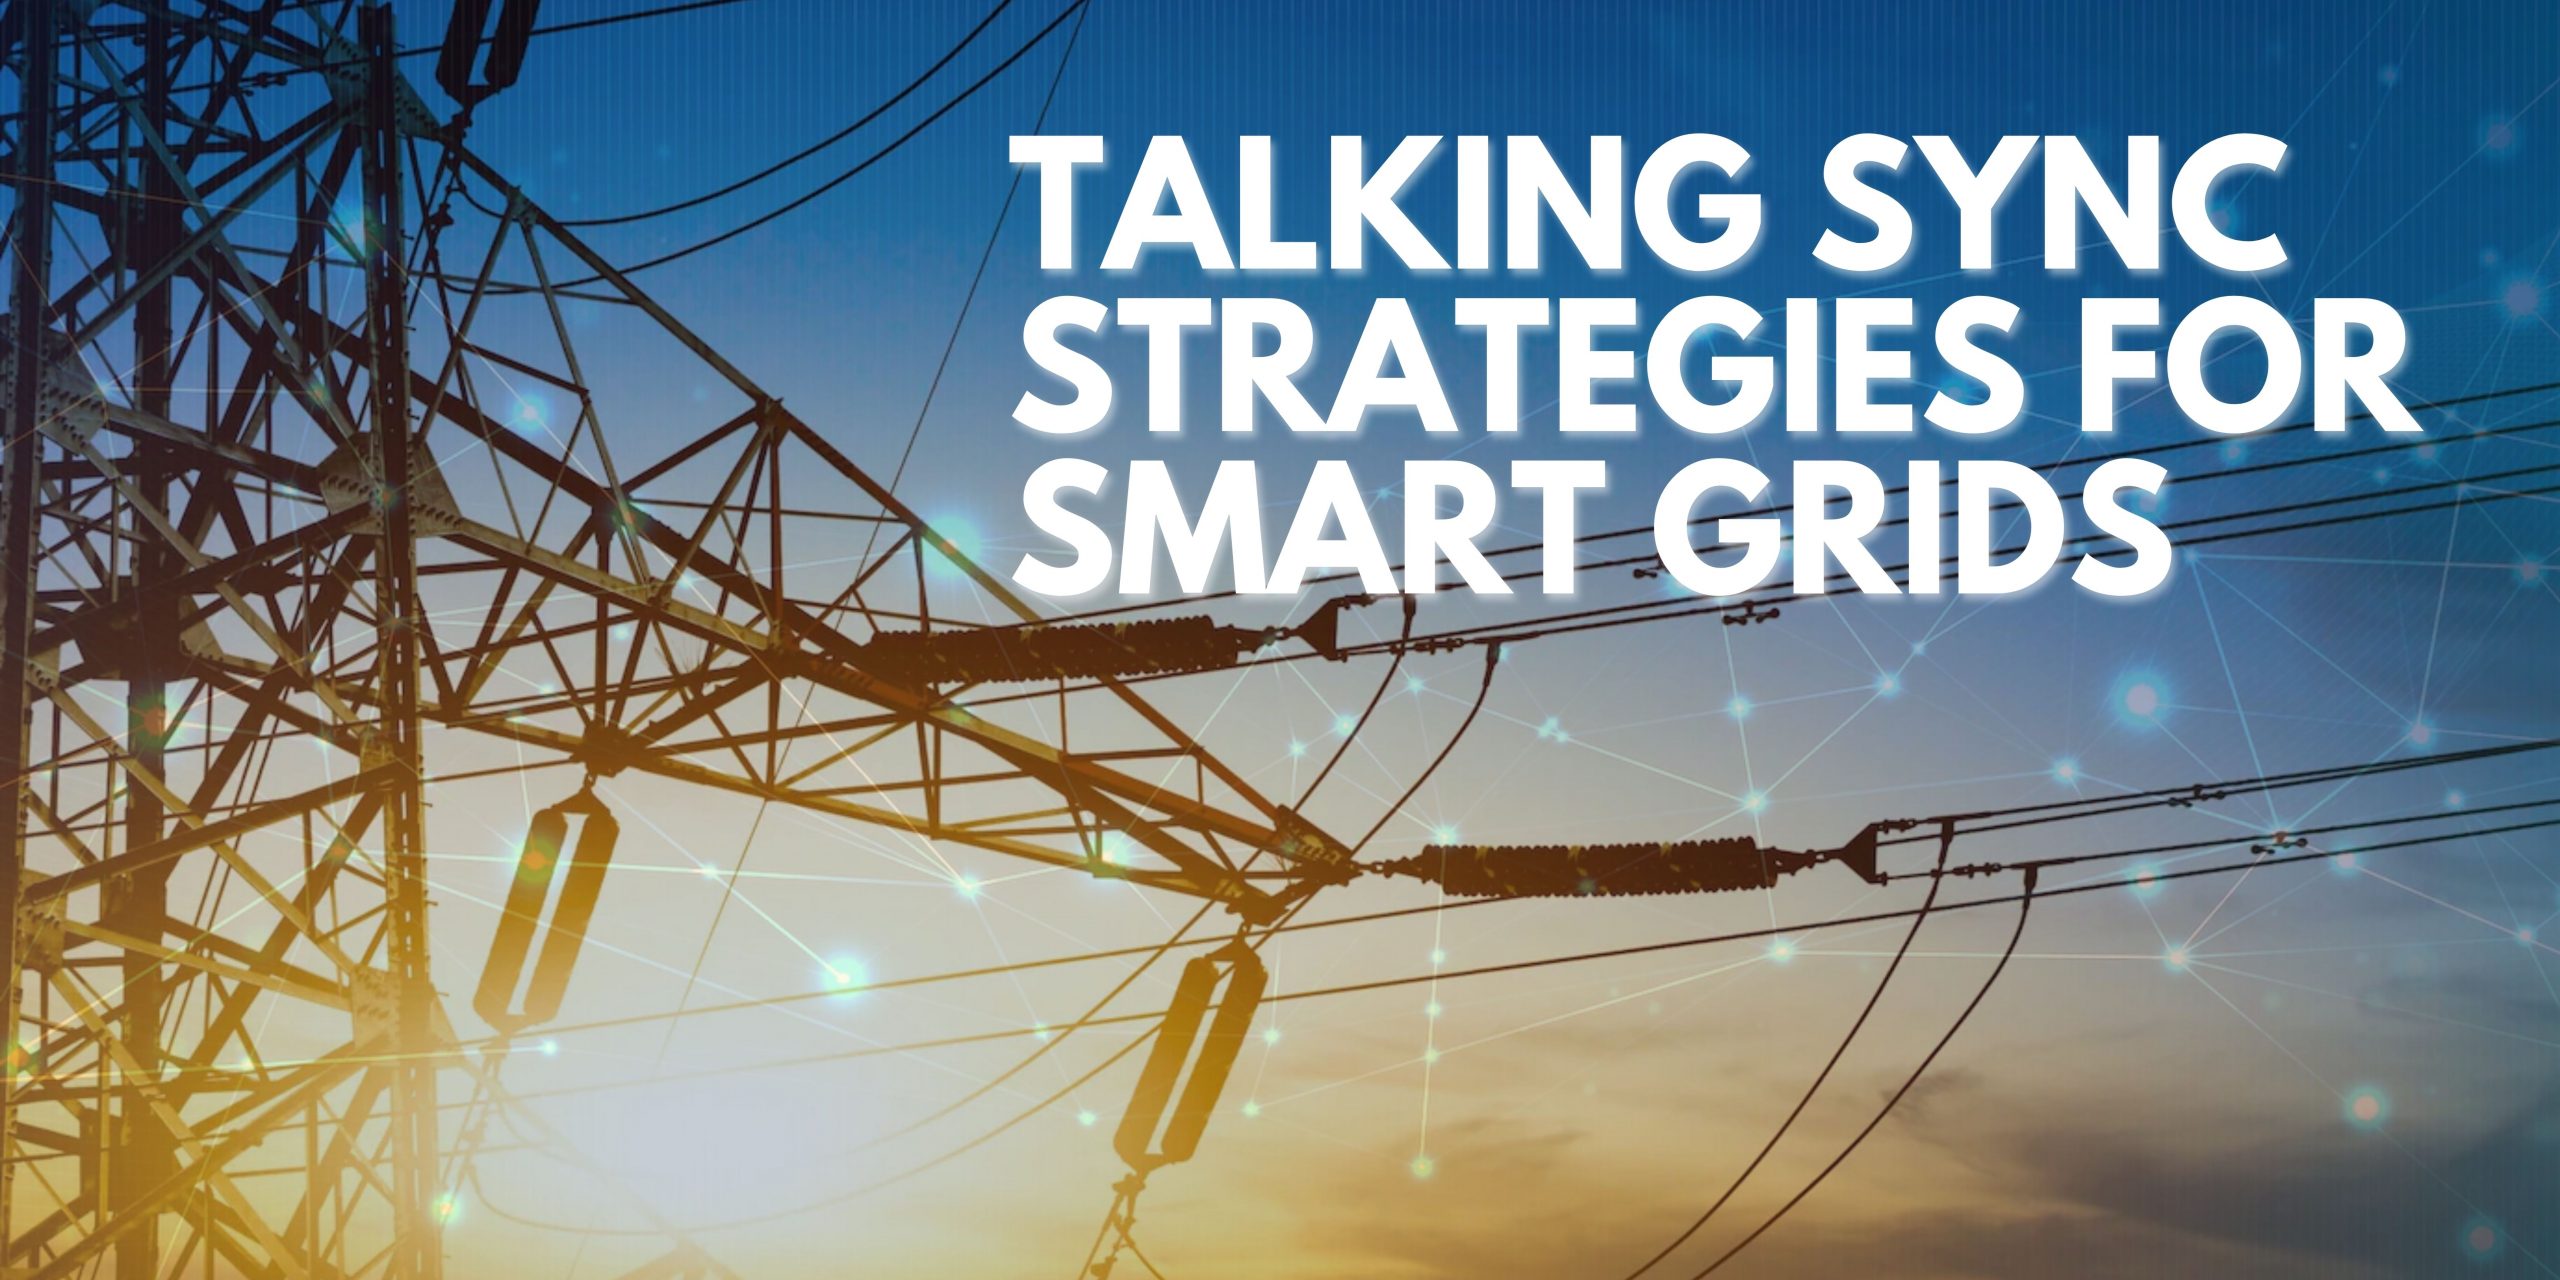 ADVA Talking sync strategies for smart grids